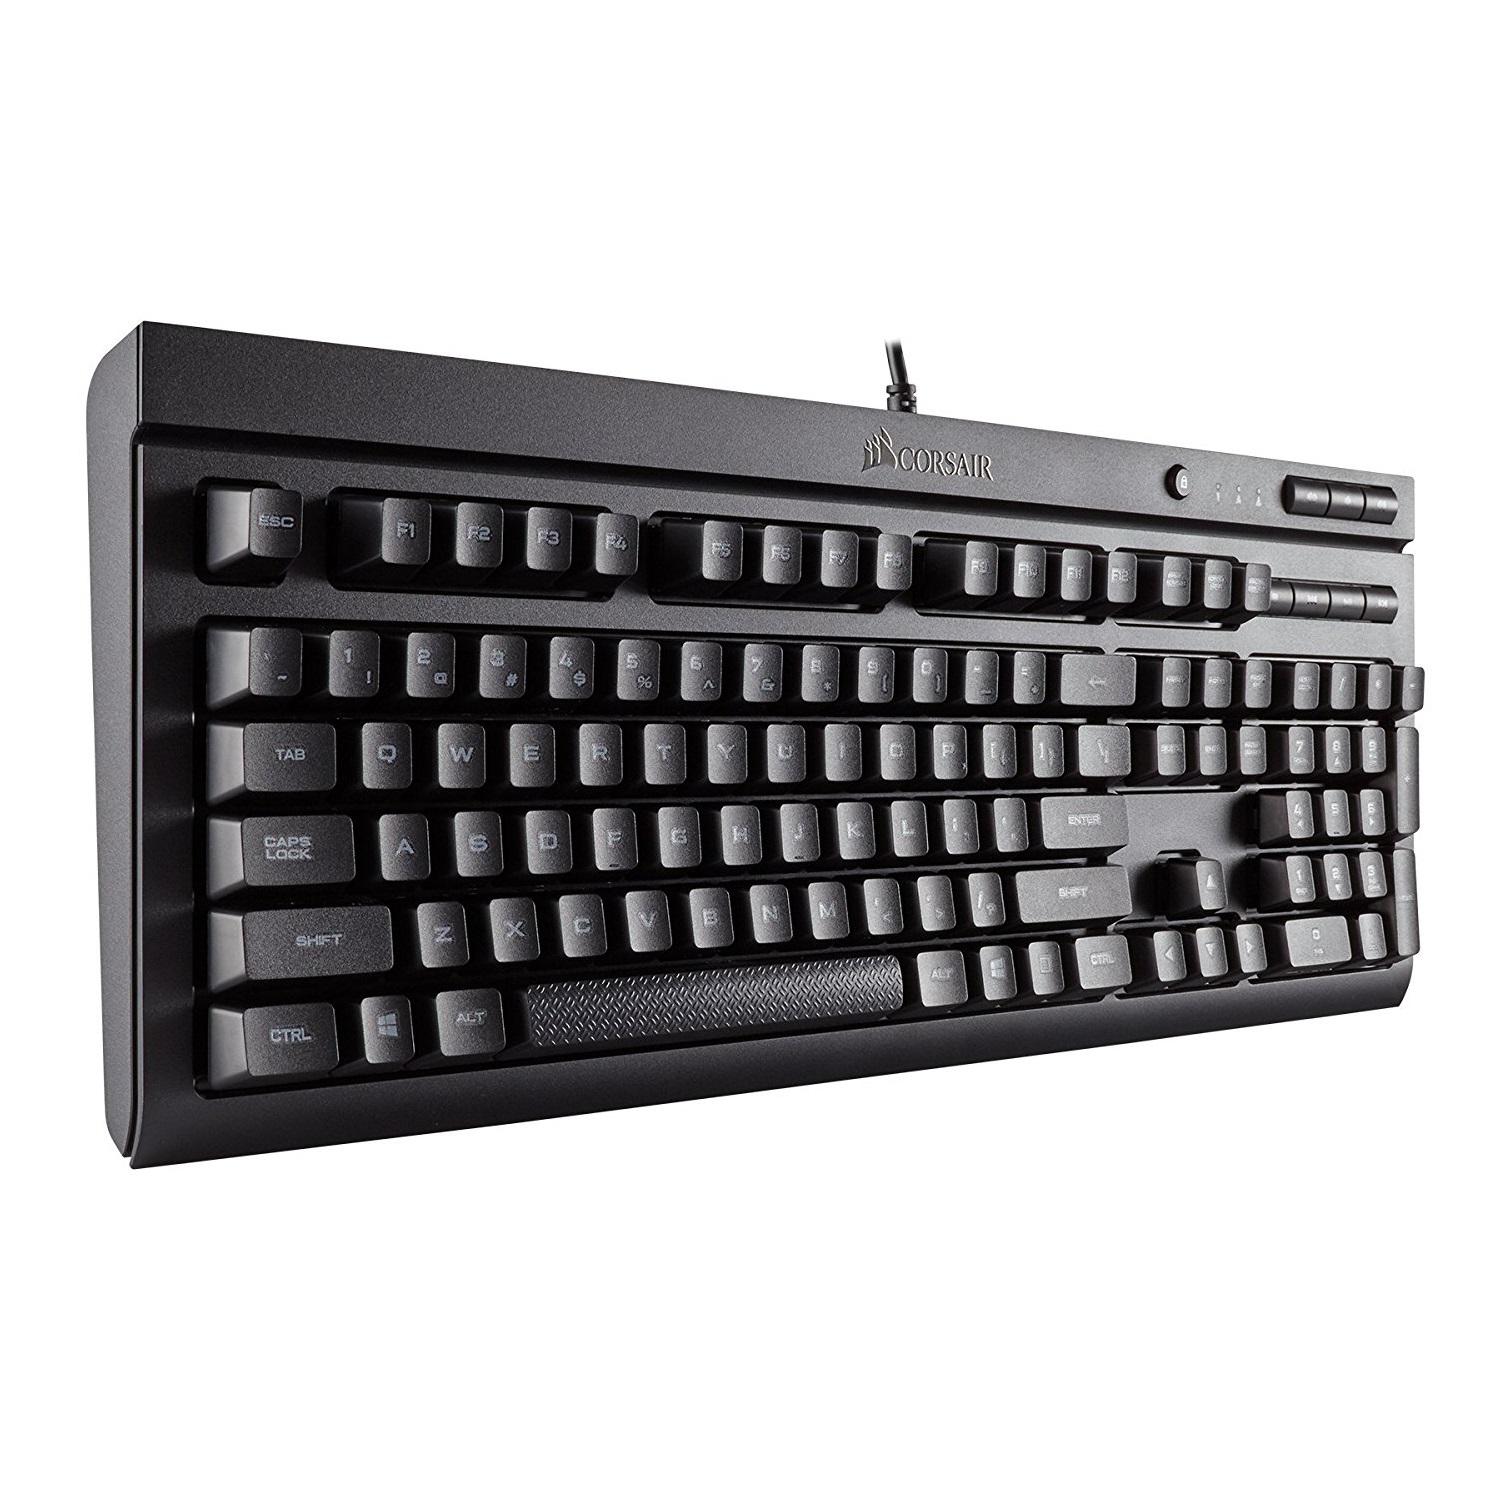 CORSAIR 美商海盗船 K68 机械键盘 红轴